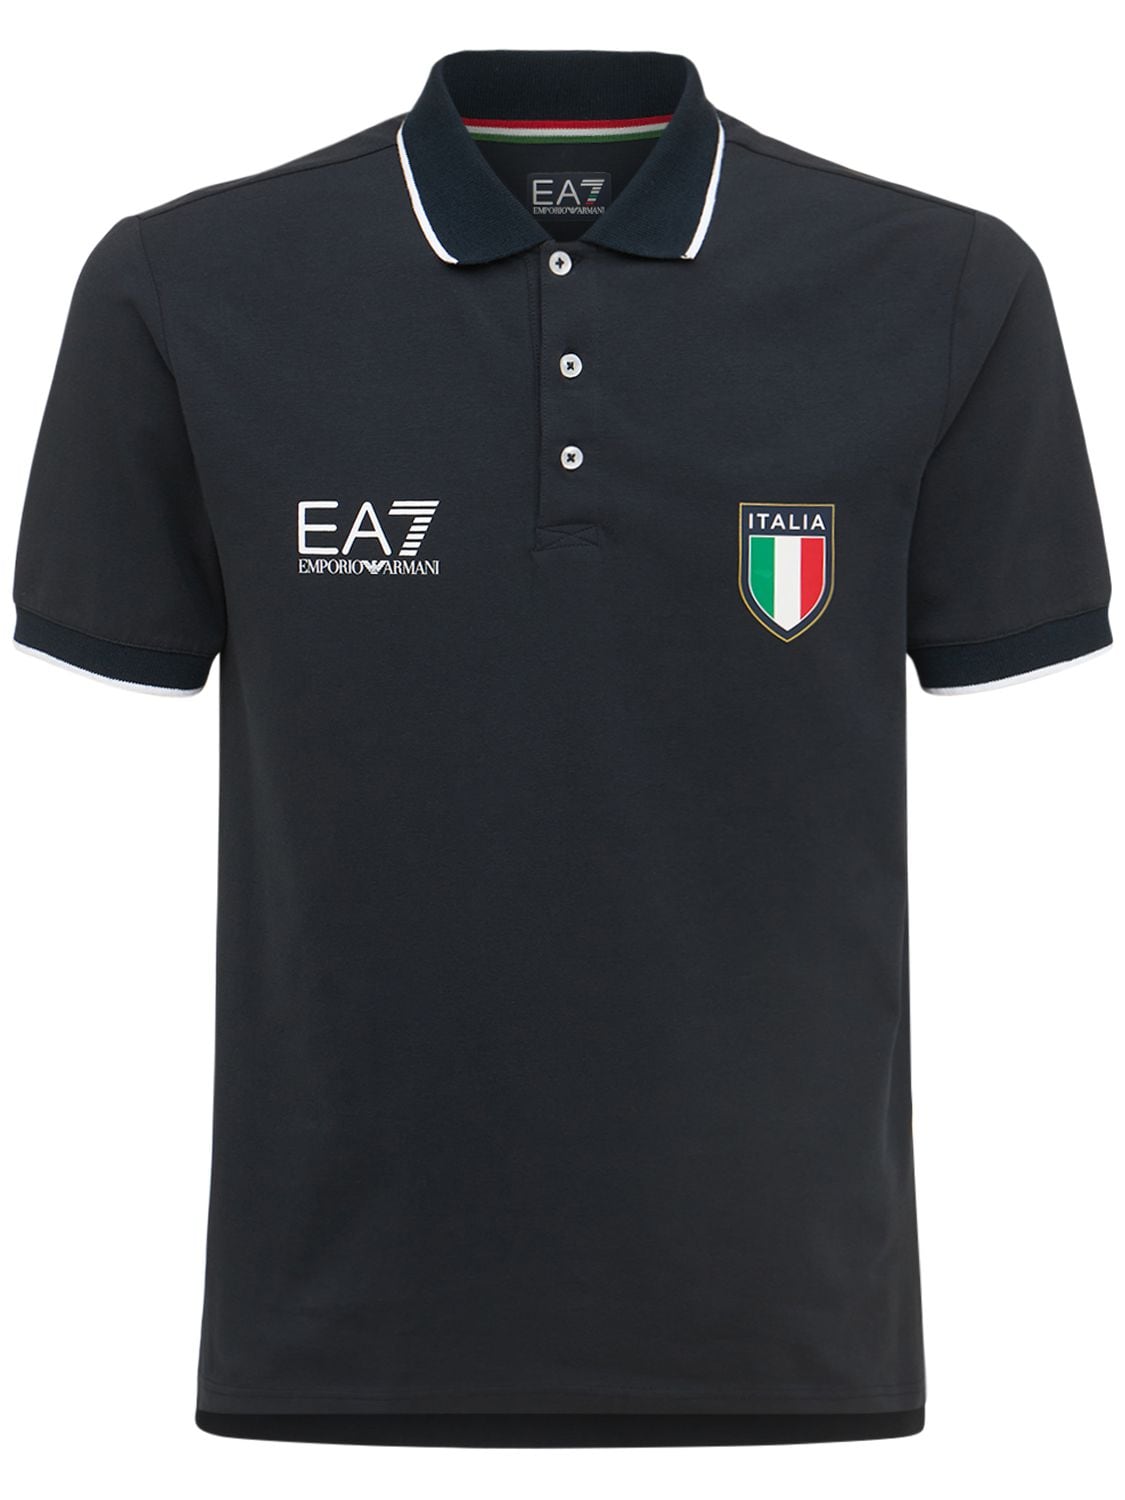 Polo En Coton Stretch Official Team Italia - EA7 EMPORIO ARMANI - Modalova